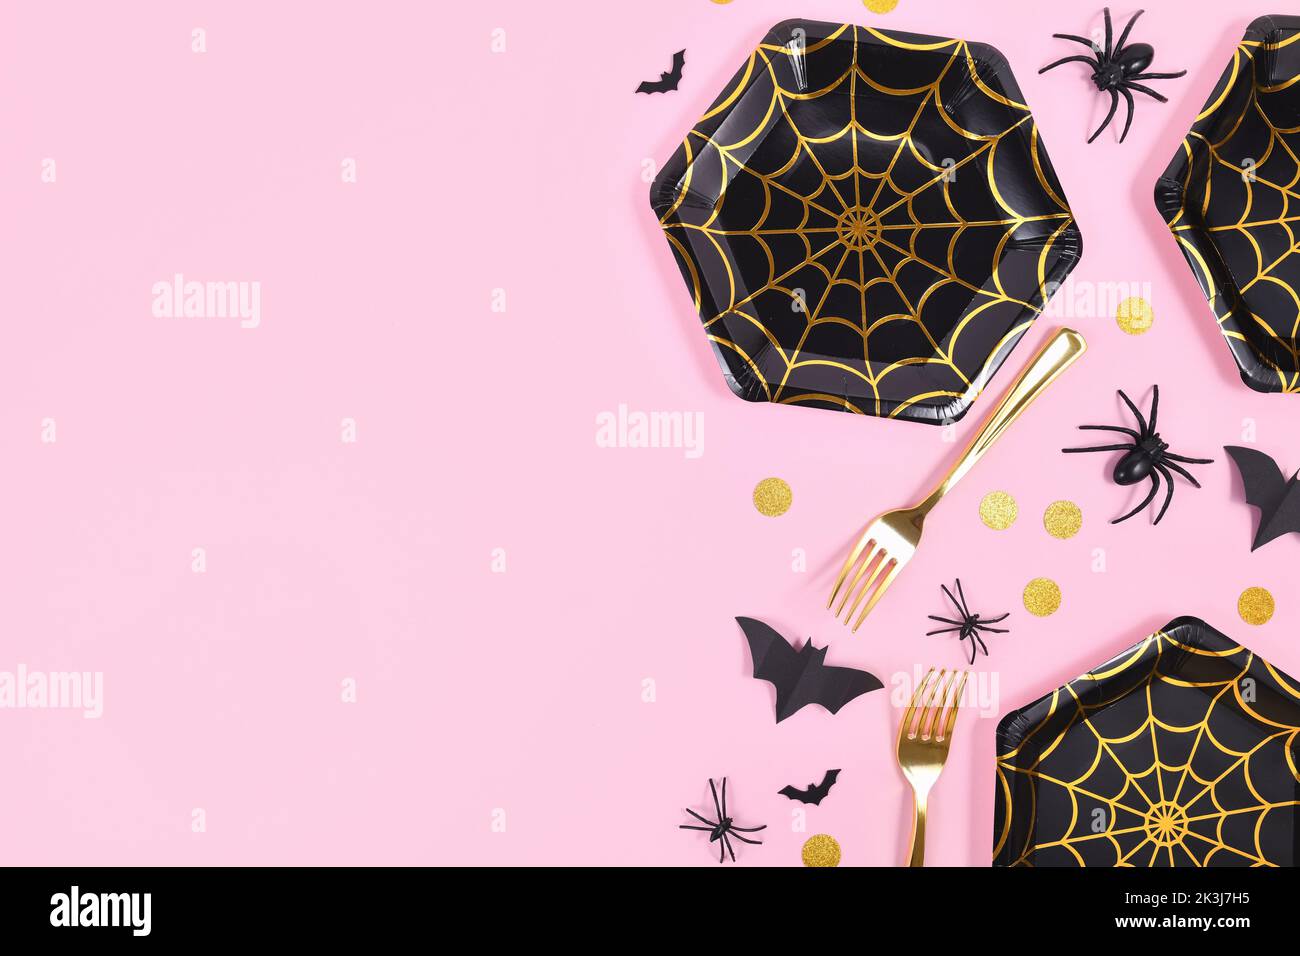 Halloween Party Flat lay avec des plaques de toile d'araignée noir et or, araignées et confetti sur fond rose Banque D'Images